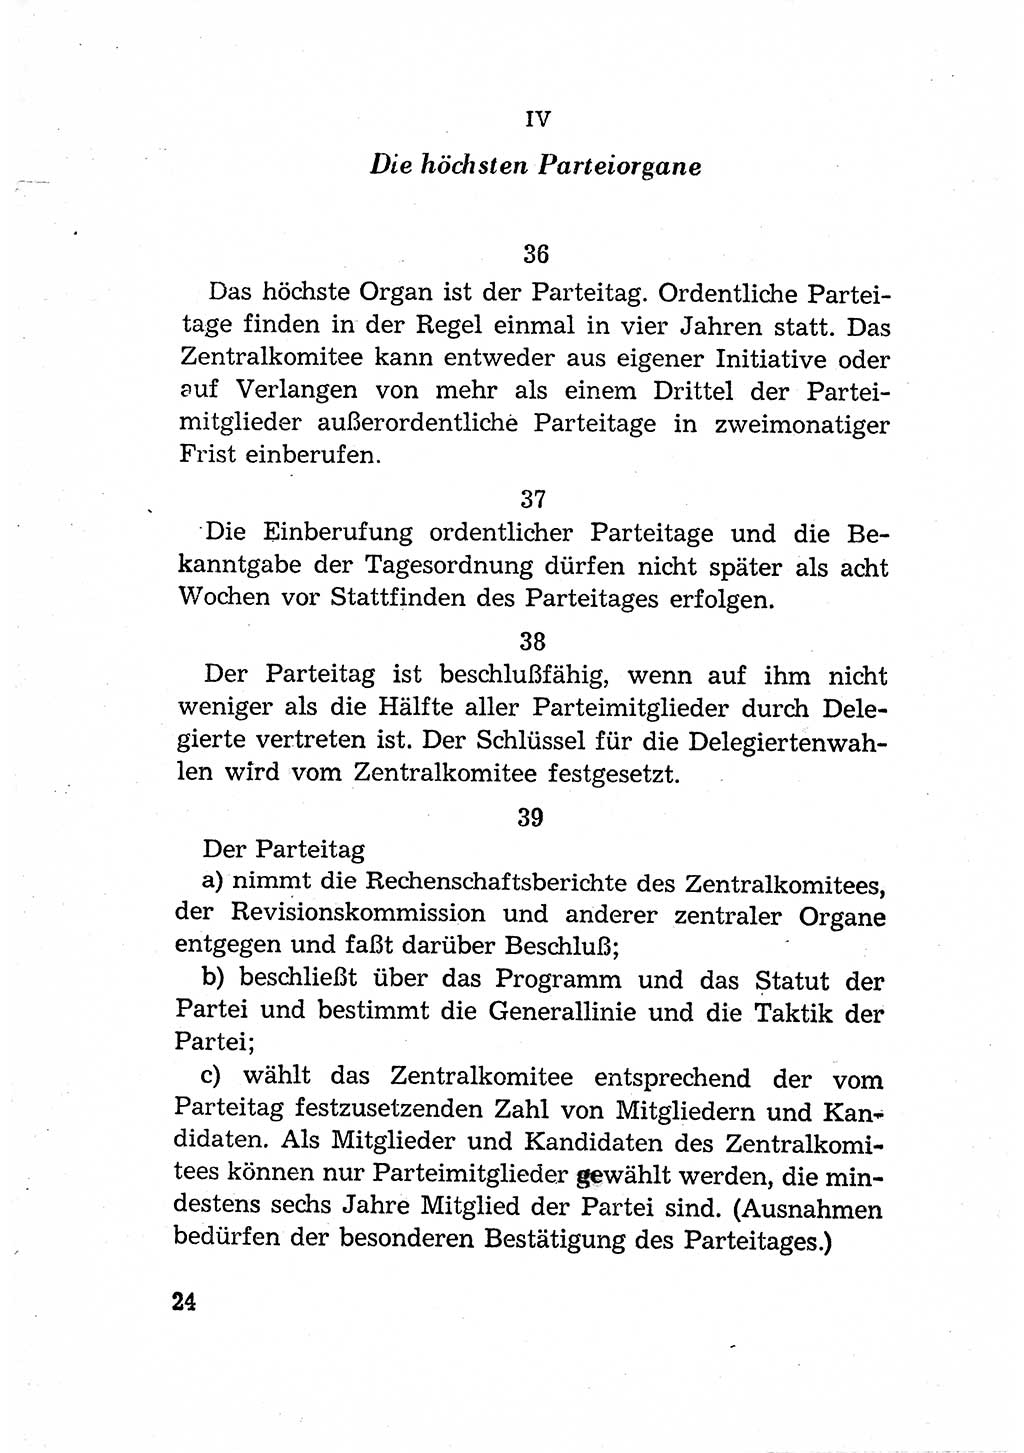 Statut der Sozialistischen Einheitspartei Deutschlands (SED) [Deutsche Demokratische Republik (DDR)] 1958, Seite 24 (St. SED DDR 1958, S. 24)